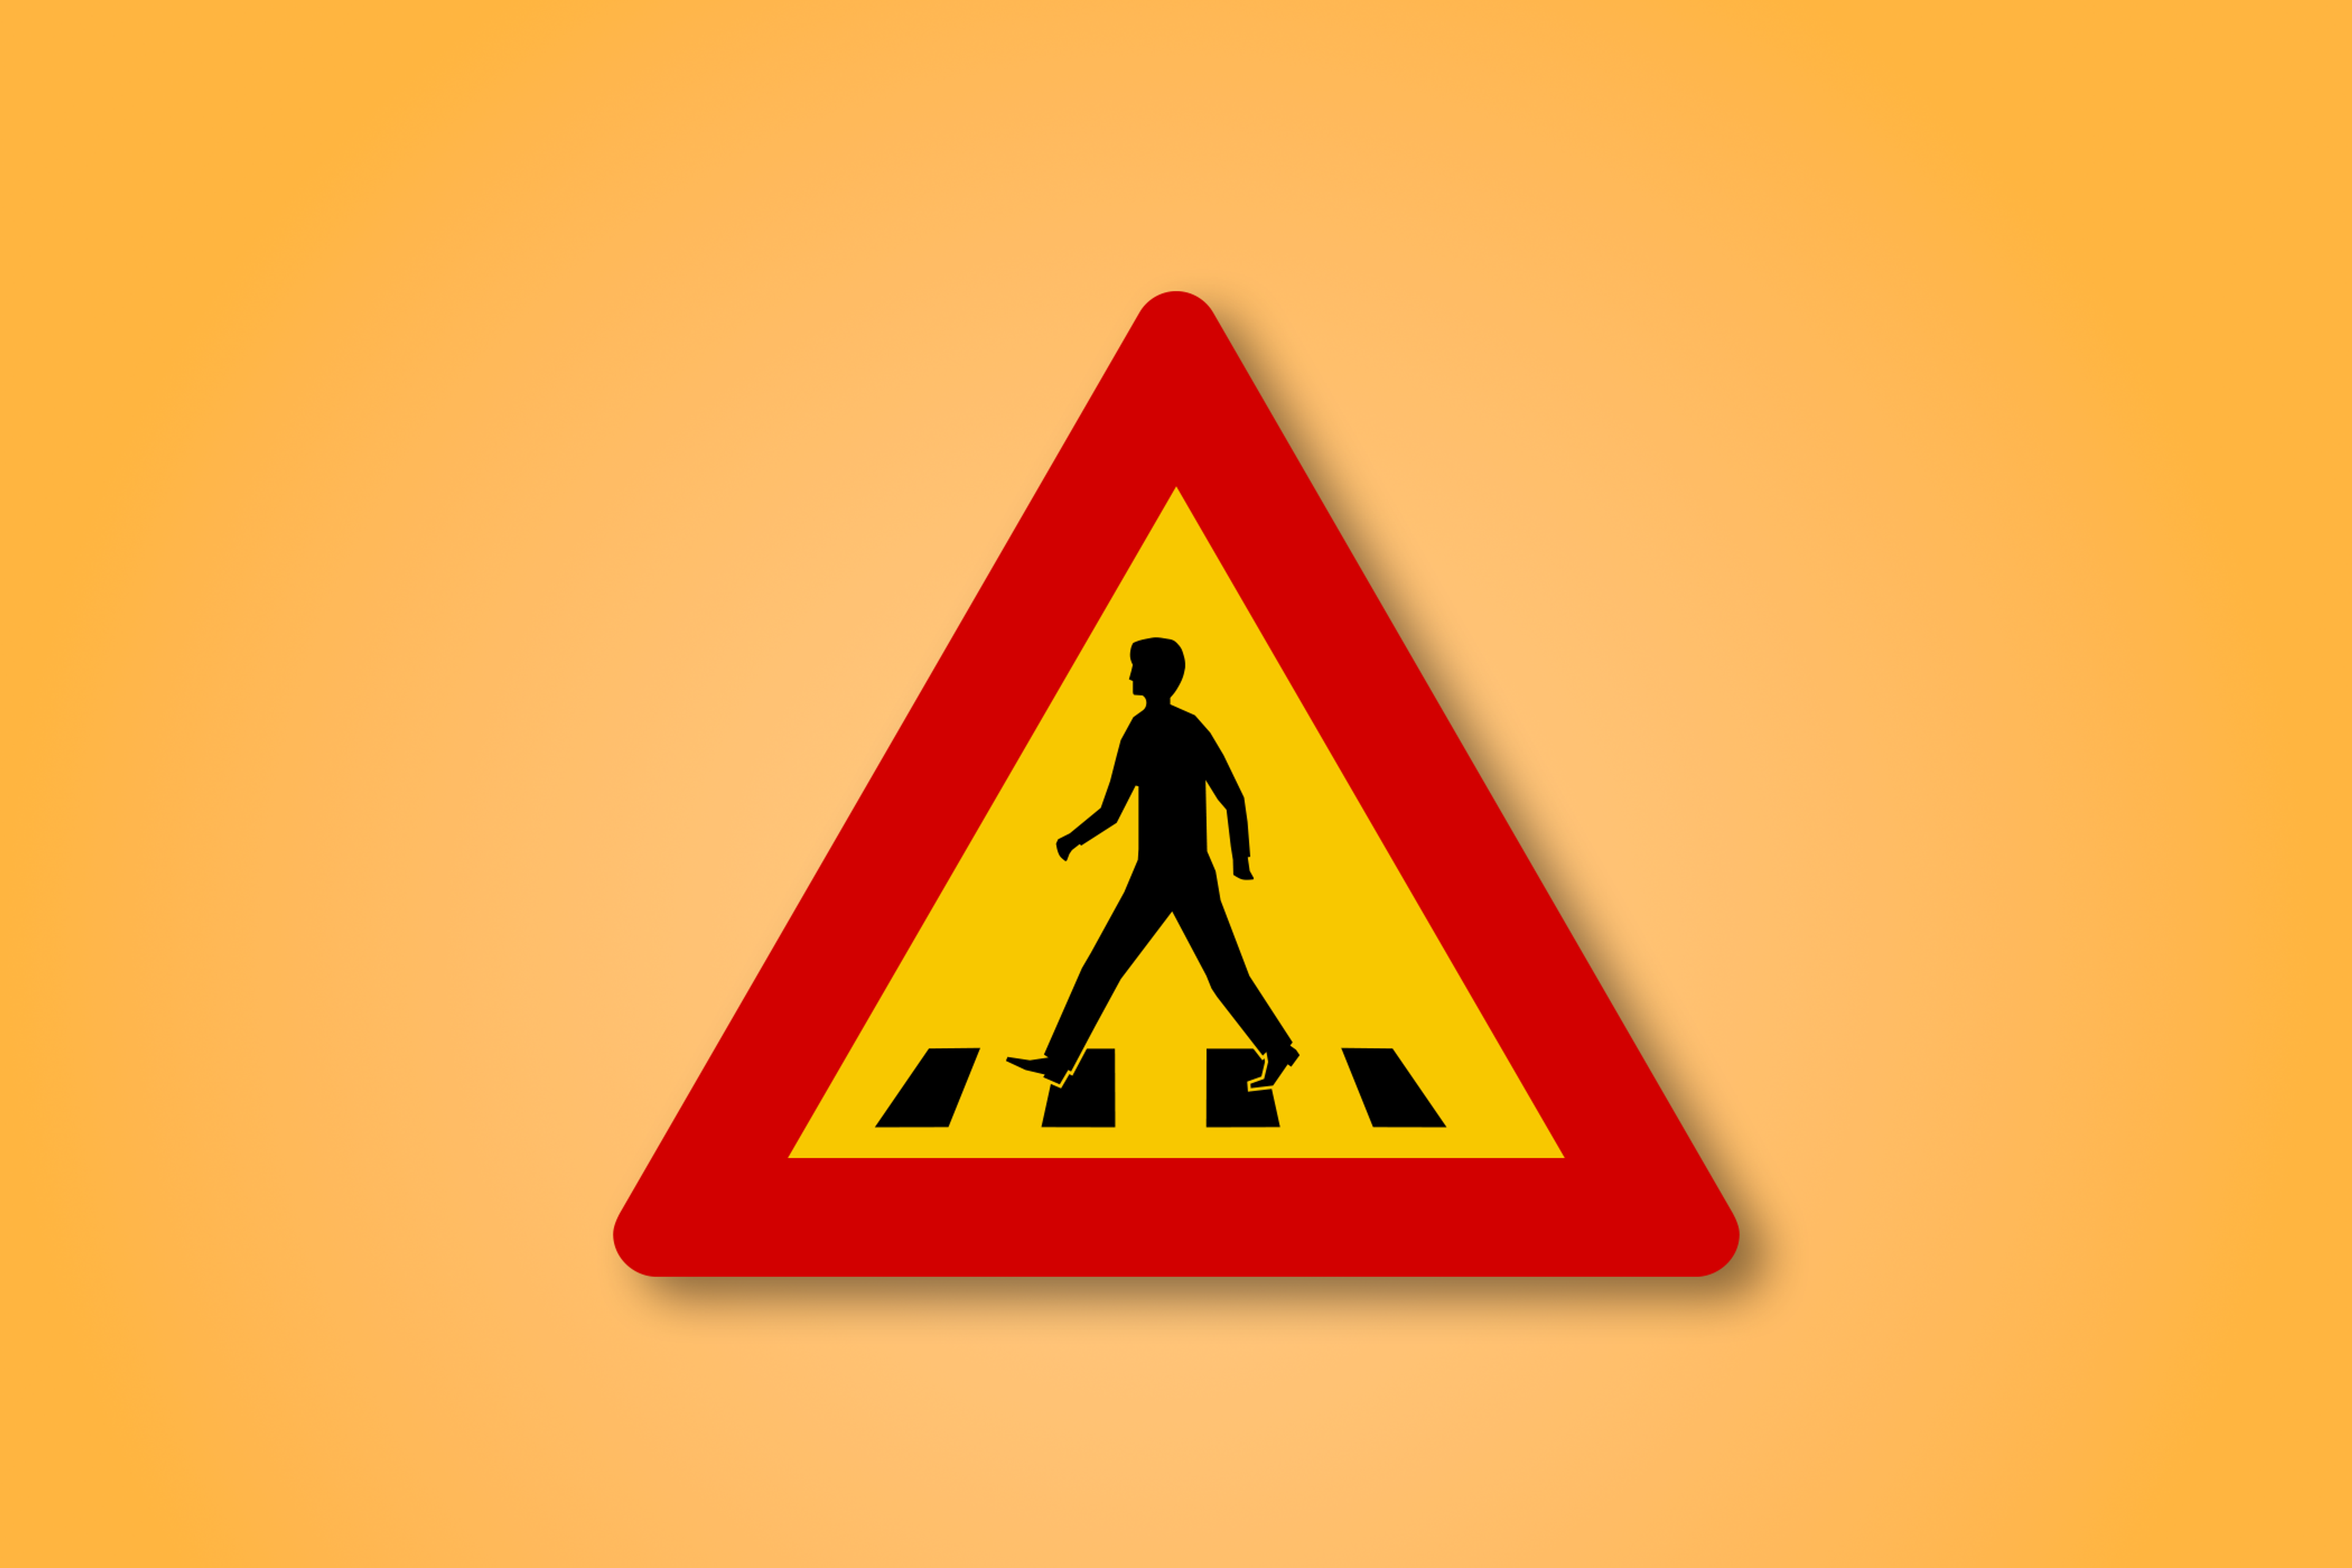 Panneau rouge et jaune avec un homme marchant au milieu. Ce panneau signifie Zebra Crossing devant